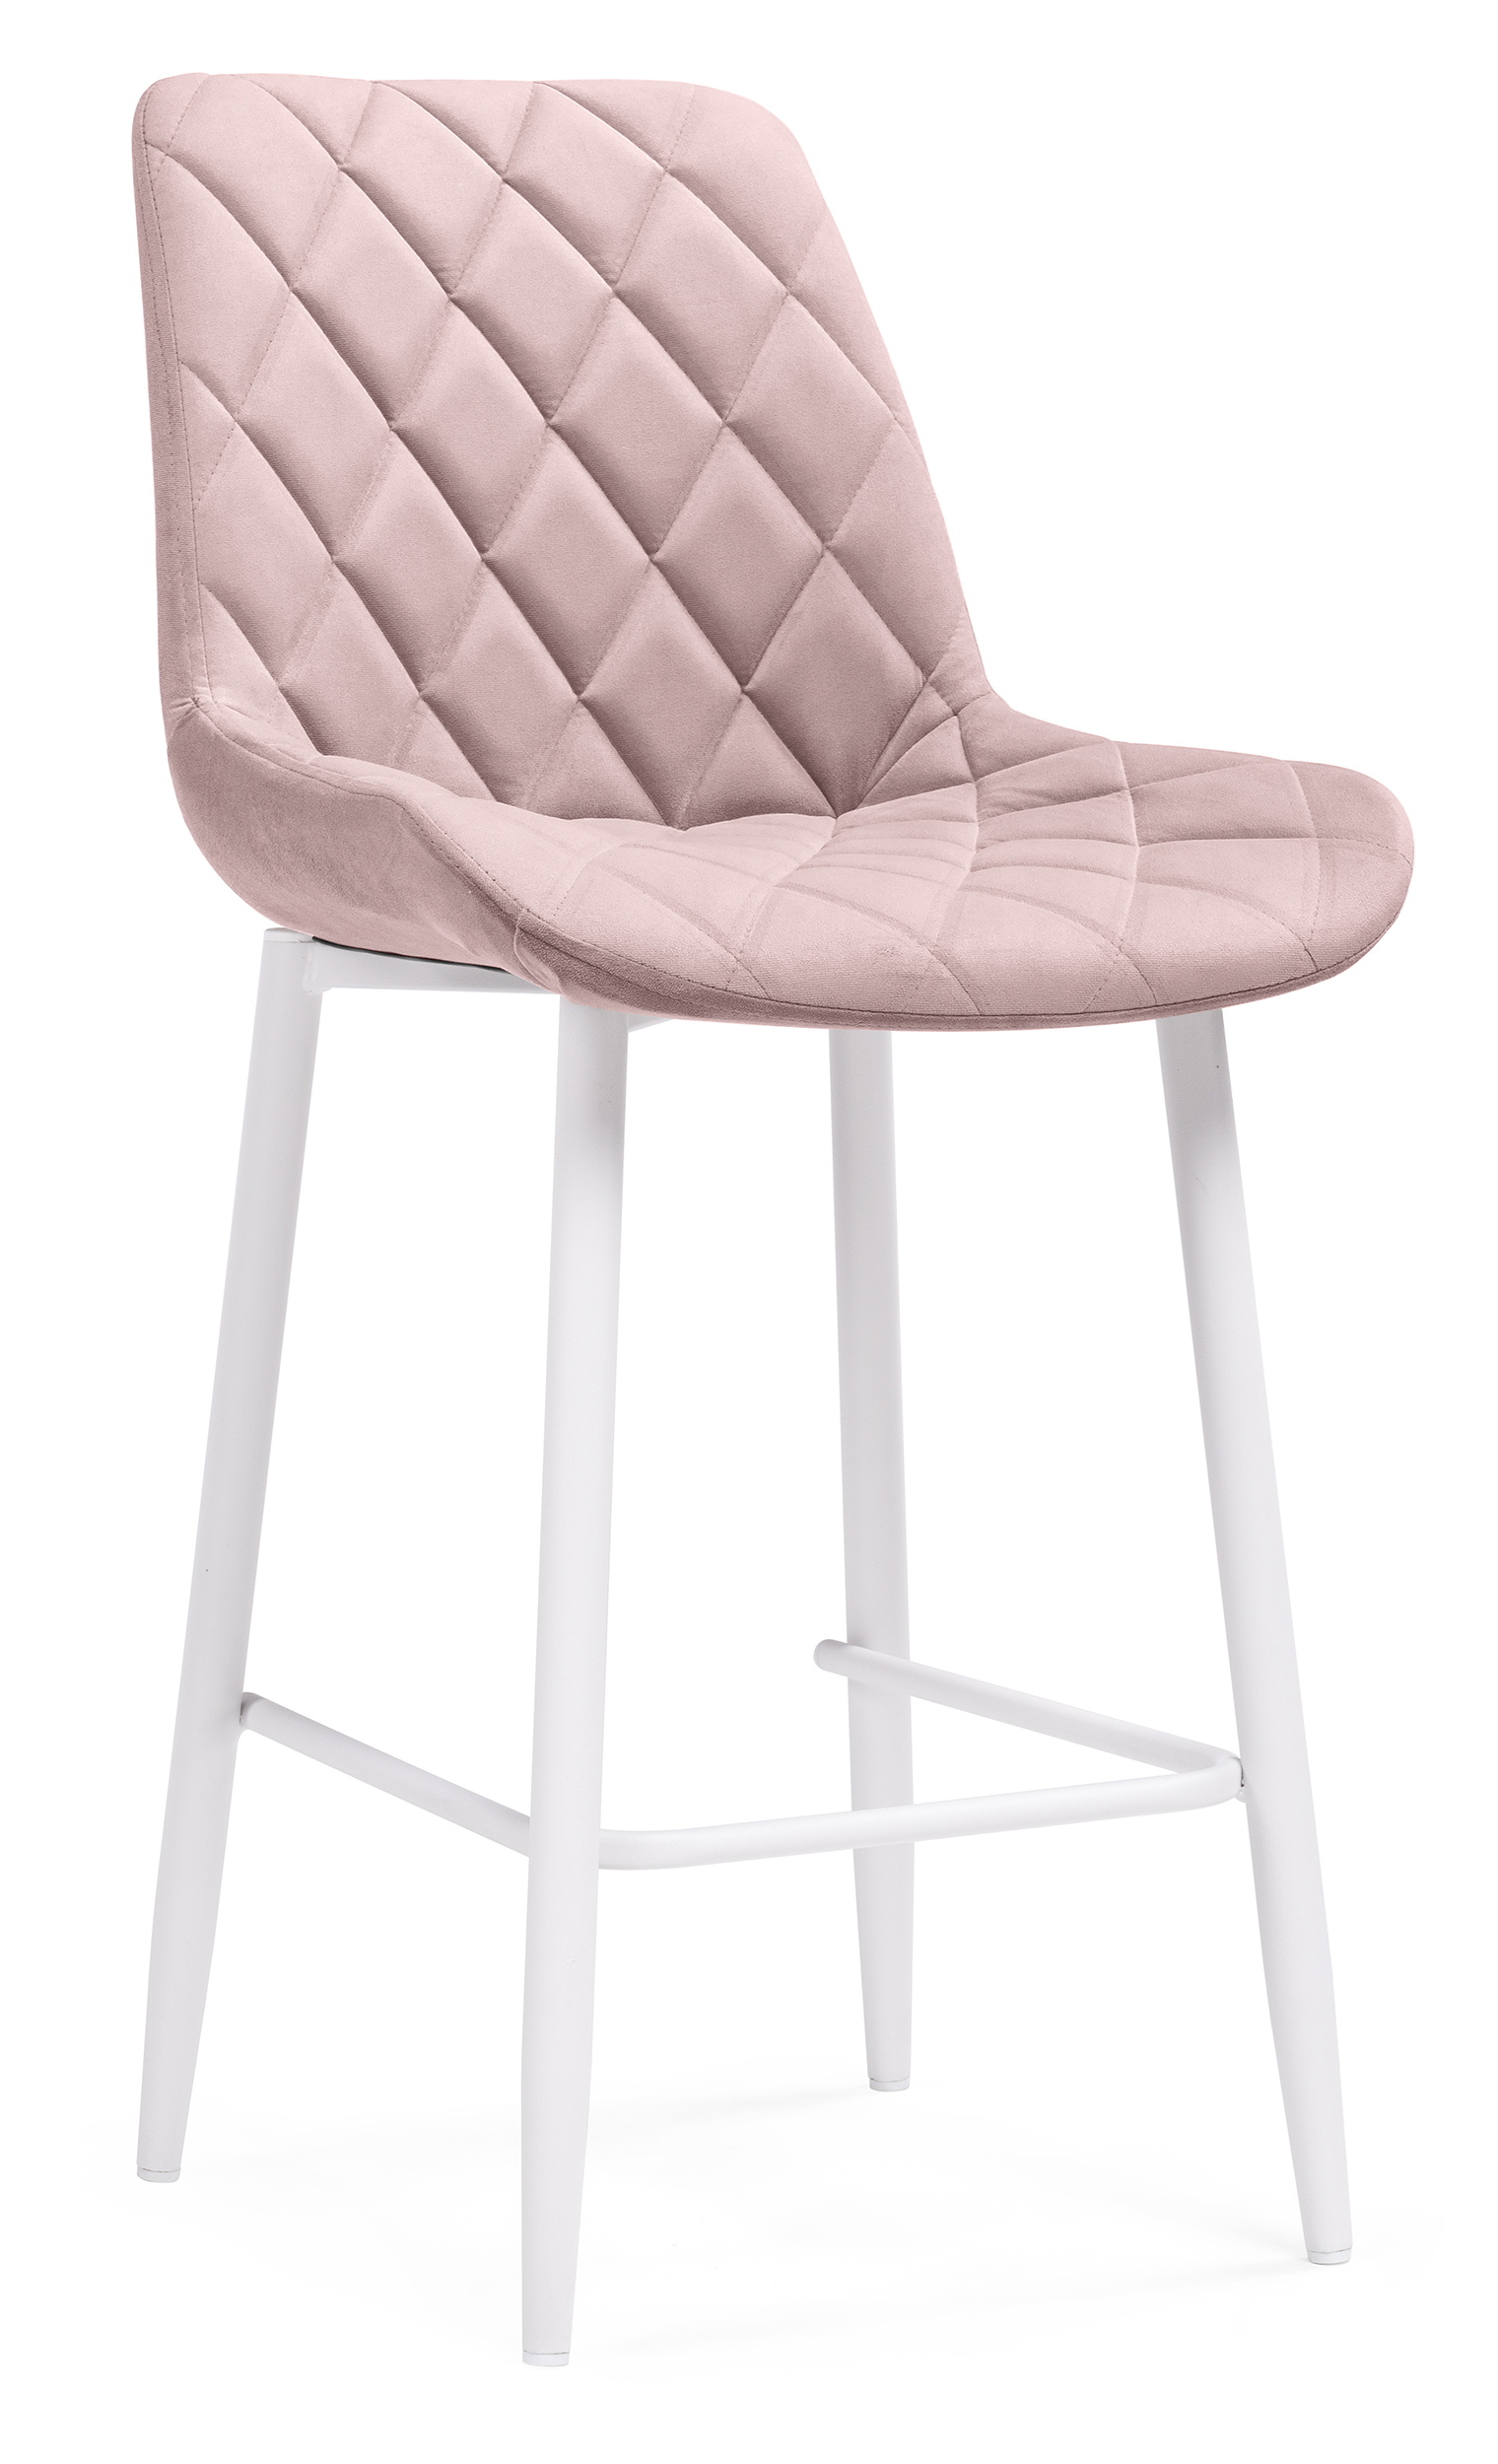 Полубарный стул Мебельные решения Баодин, розовый / белый